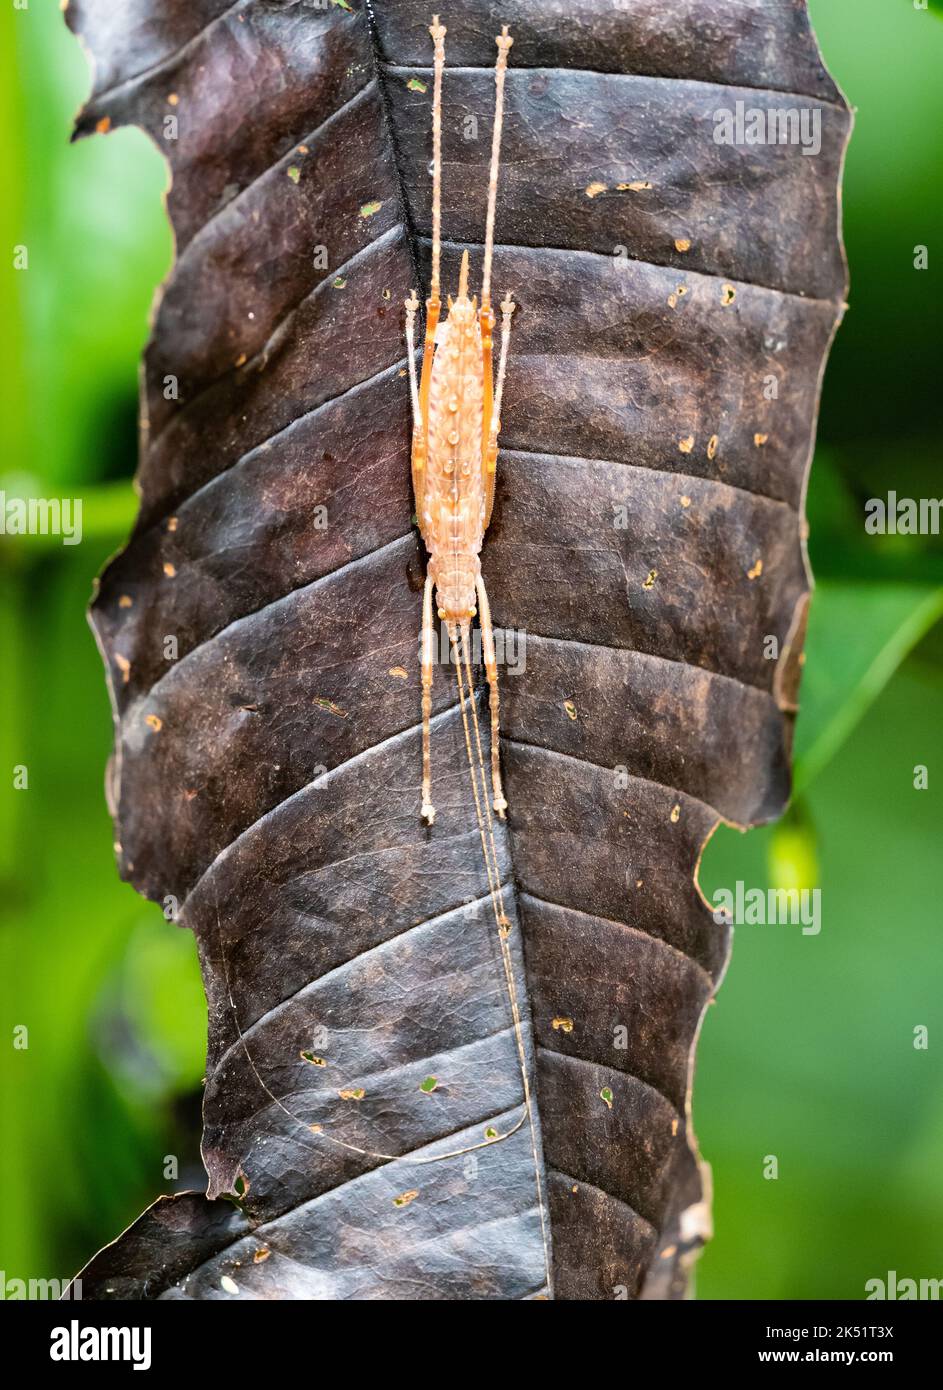 Un Katydid () de color dorado sobre una hoja muerta. Amazonas, Brasil. Foto de stock